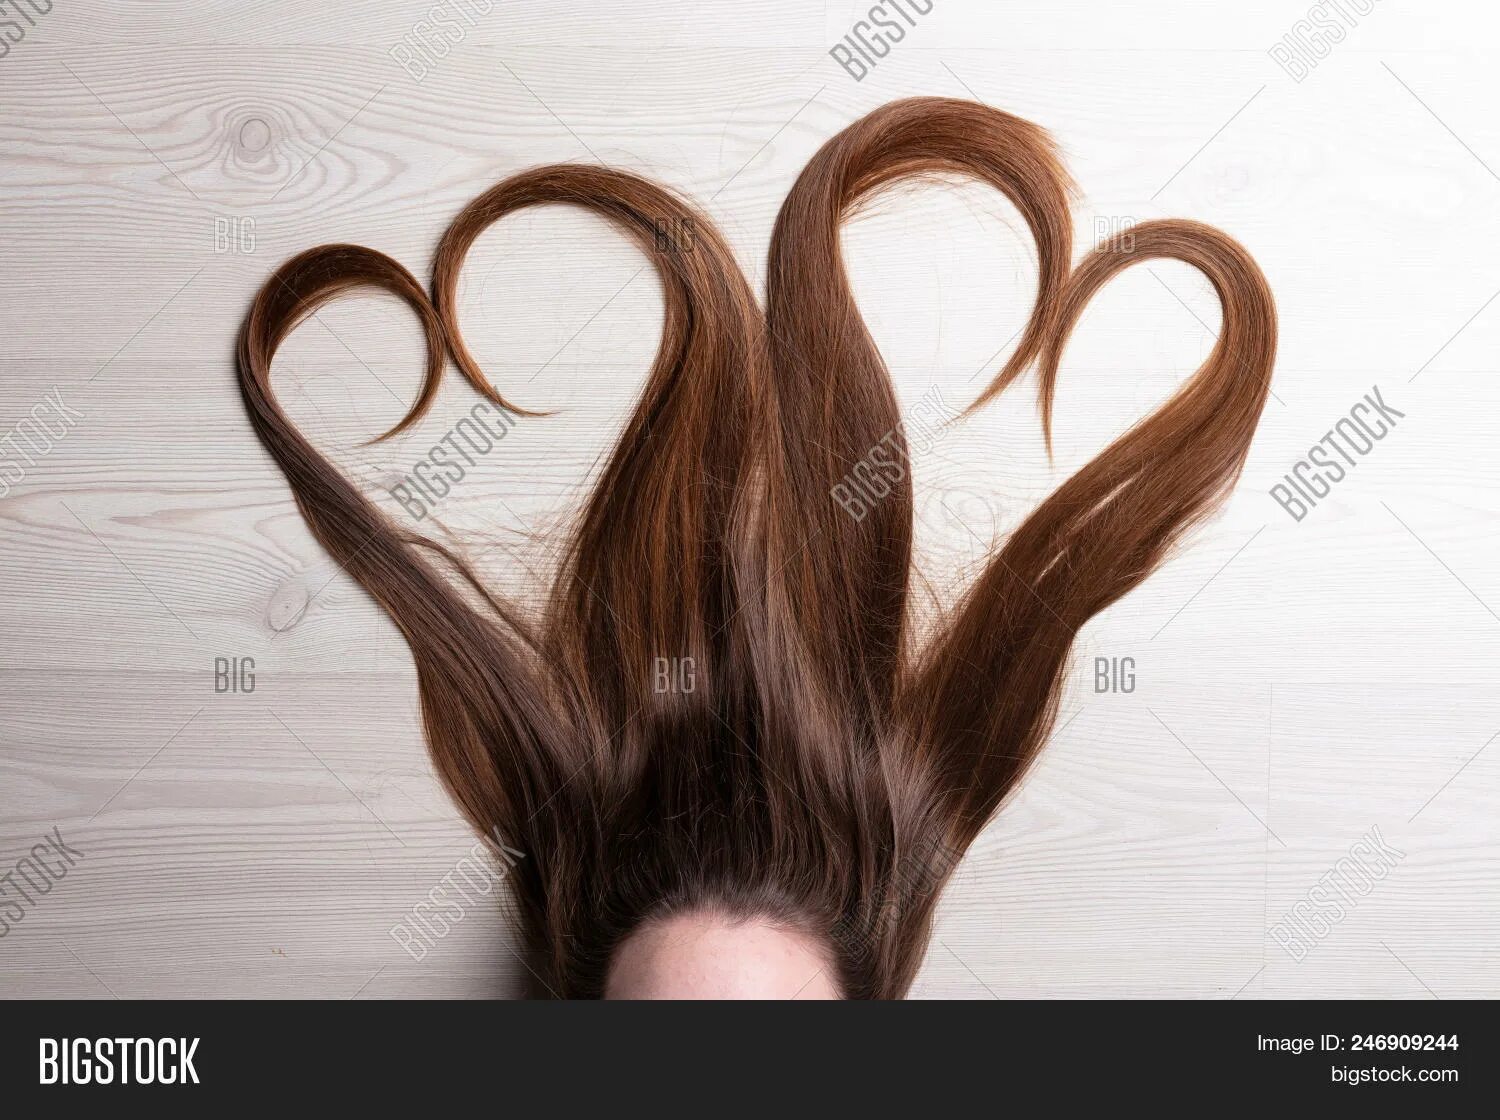 Волосы сердечком. Сердечко из волос. Сердечко из волос девушка. Девушка прическа сердечко.